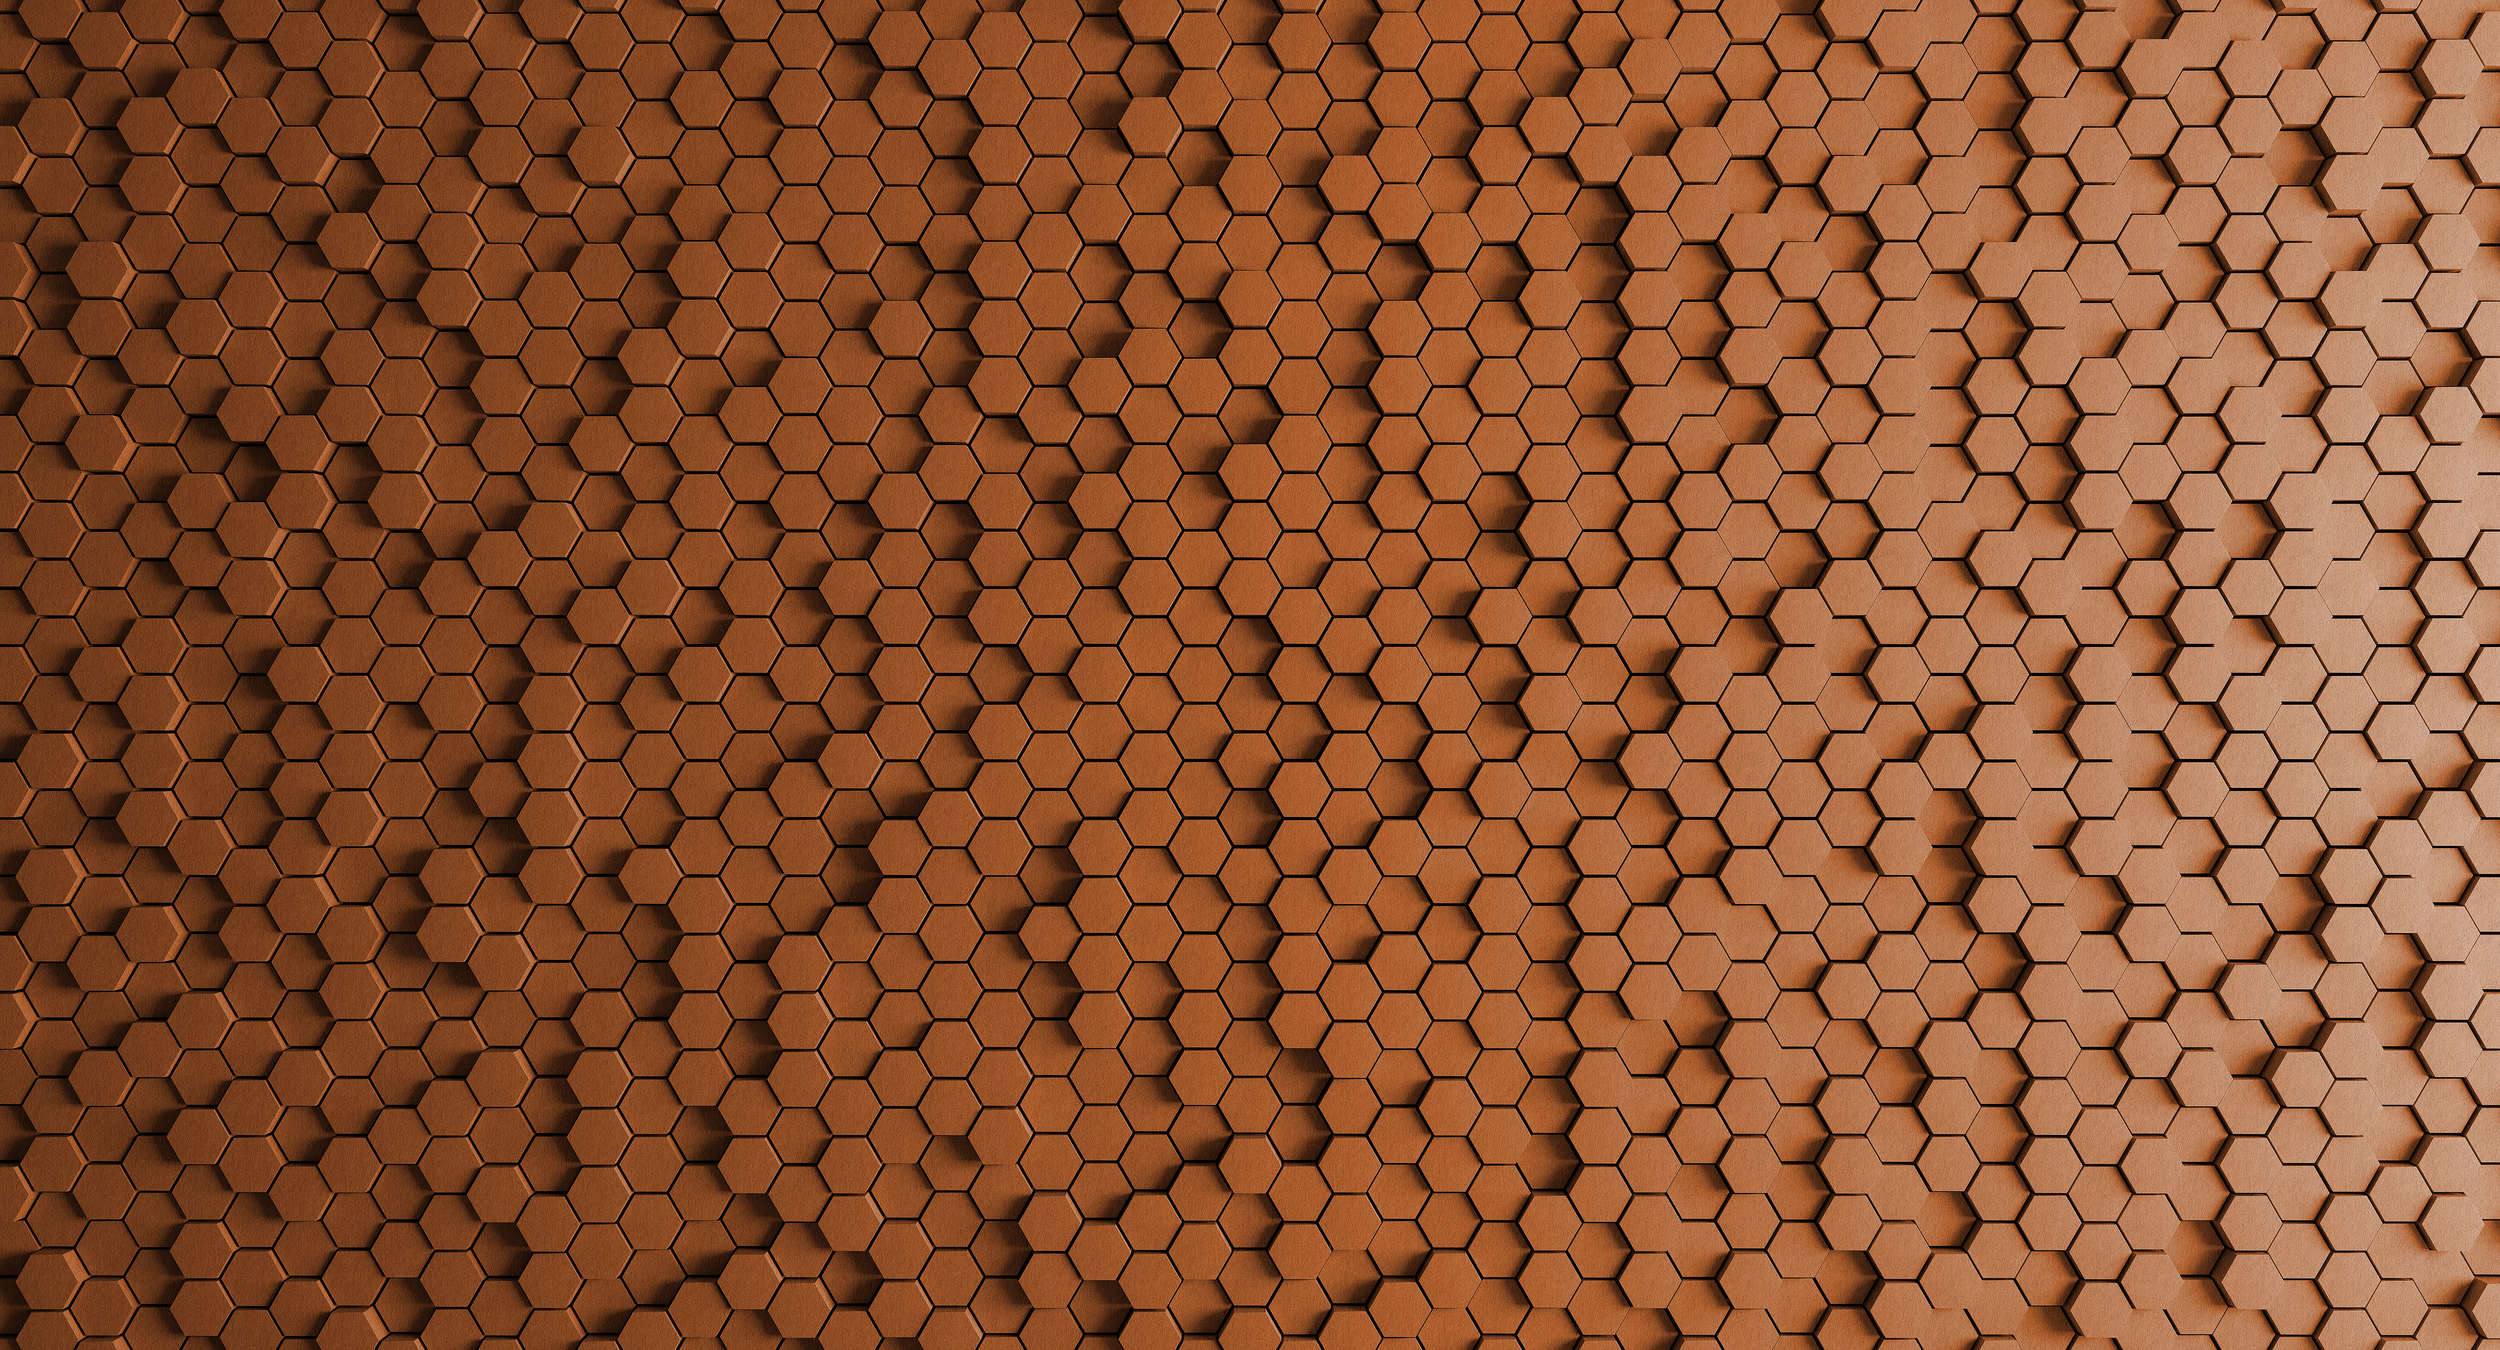             Honeycomb 2 - Papel pintado 3D con diseño de panal naranja - fieltro estructura - cobre, naranja | vellón liso perla
        